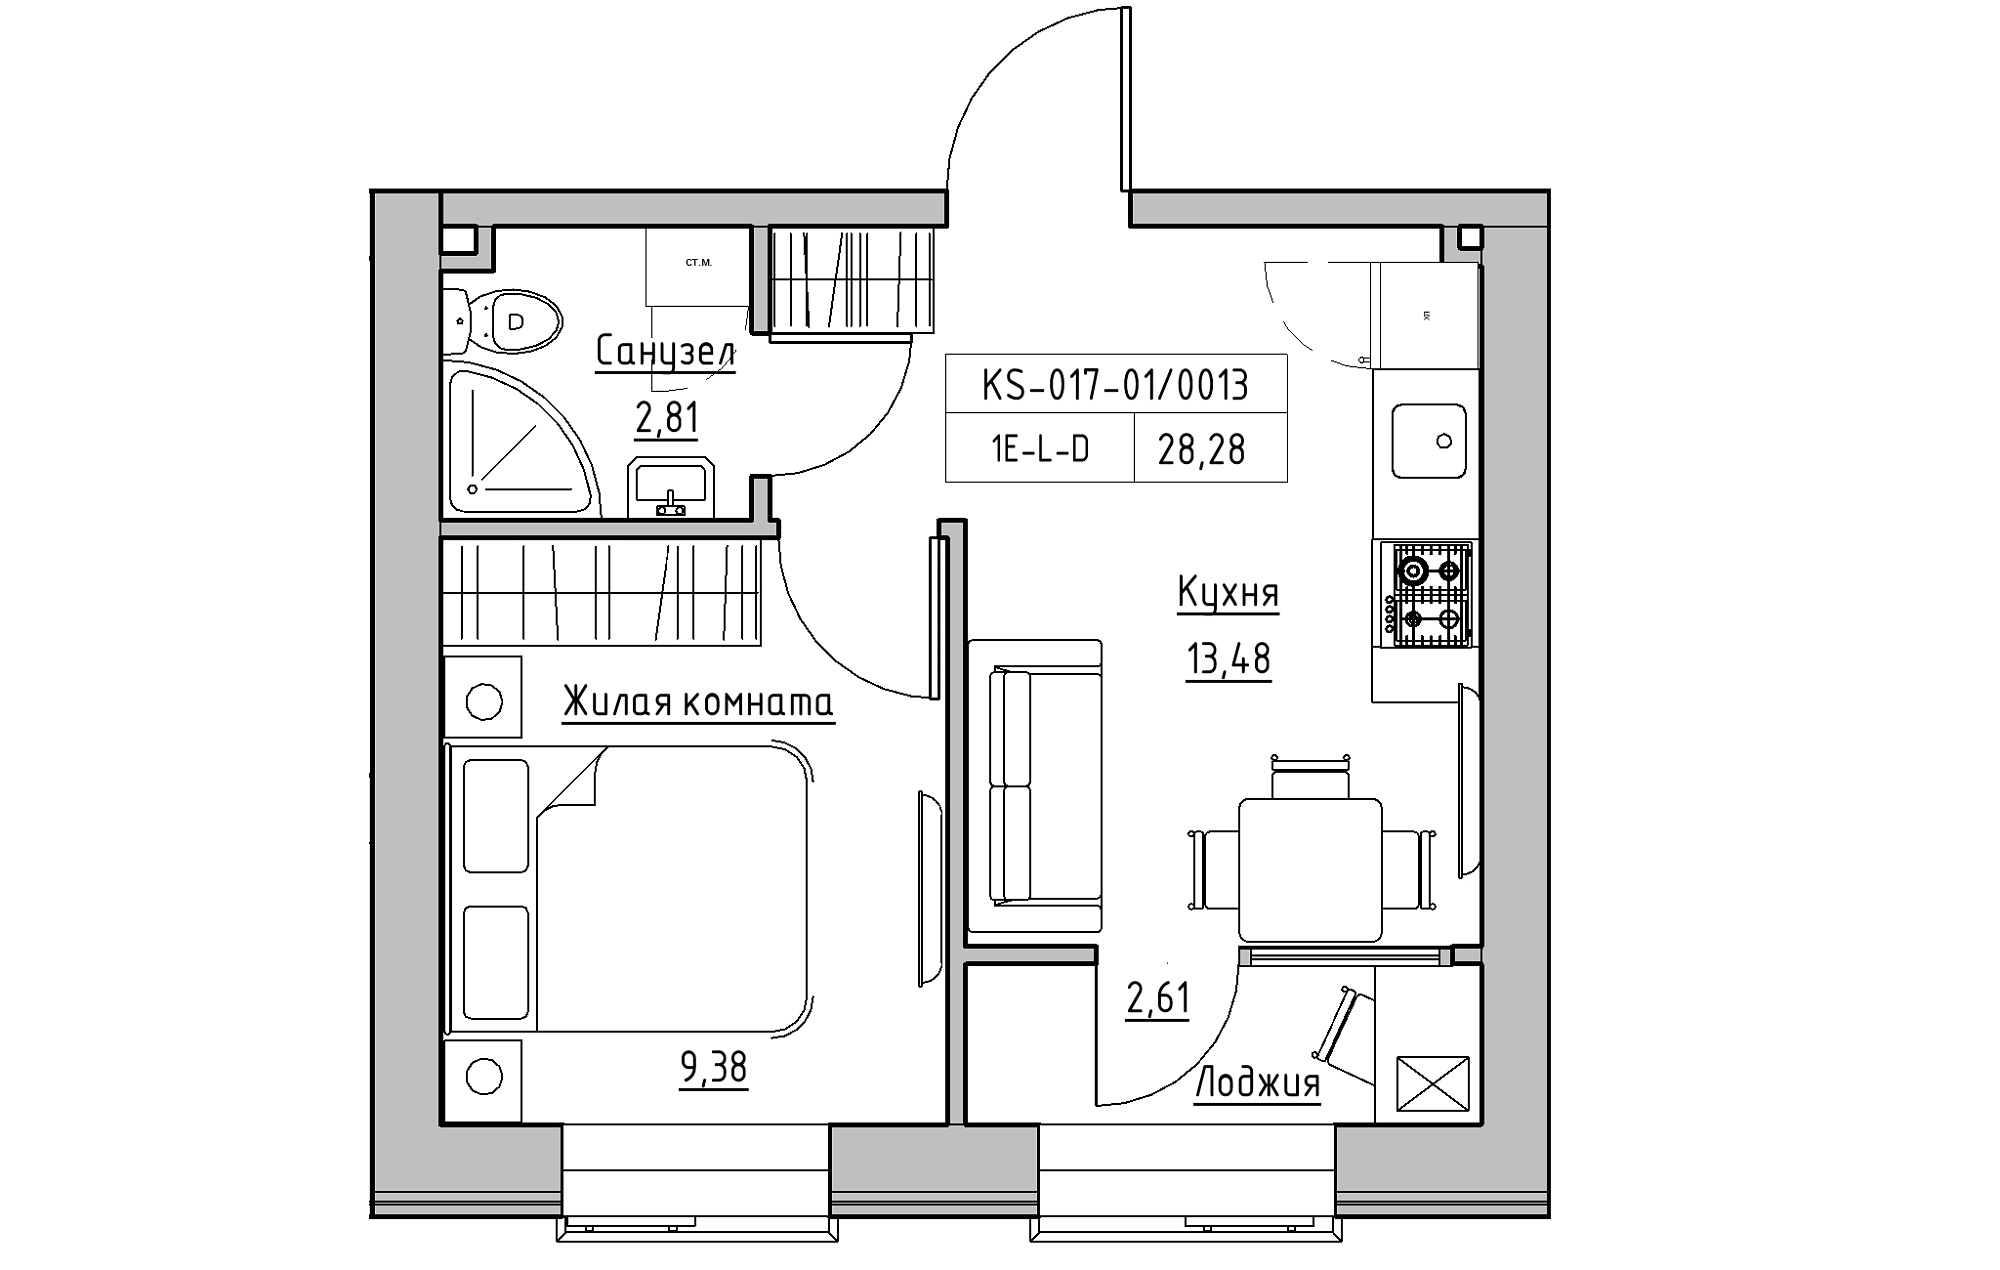 Планировка 1-к квартира площей 28.28м2, KS-017-01/0013.